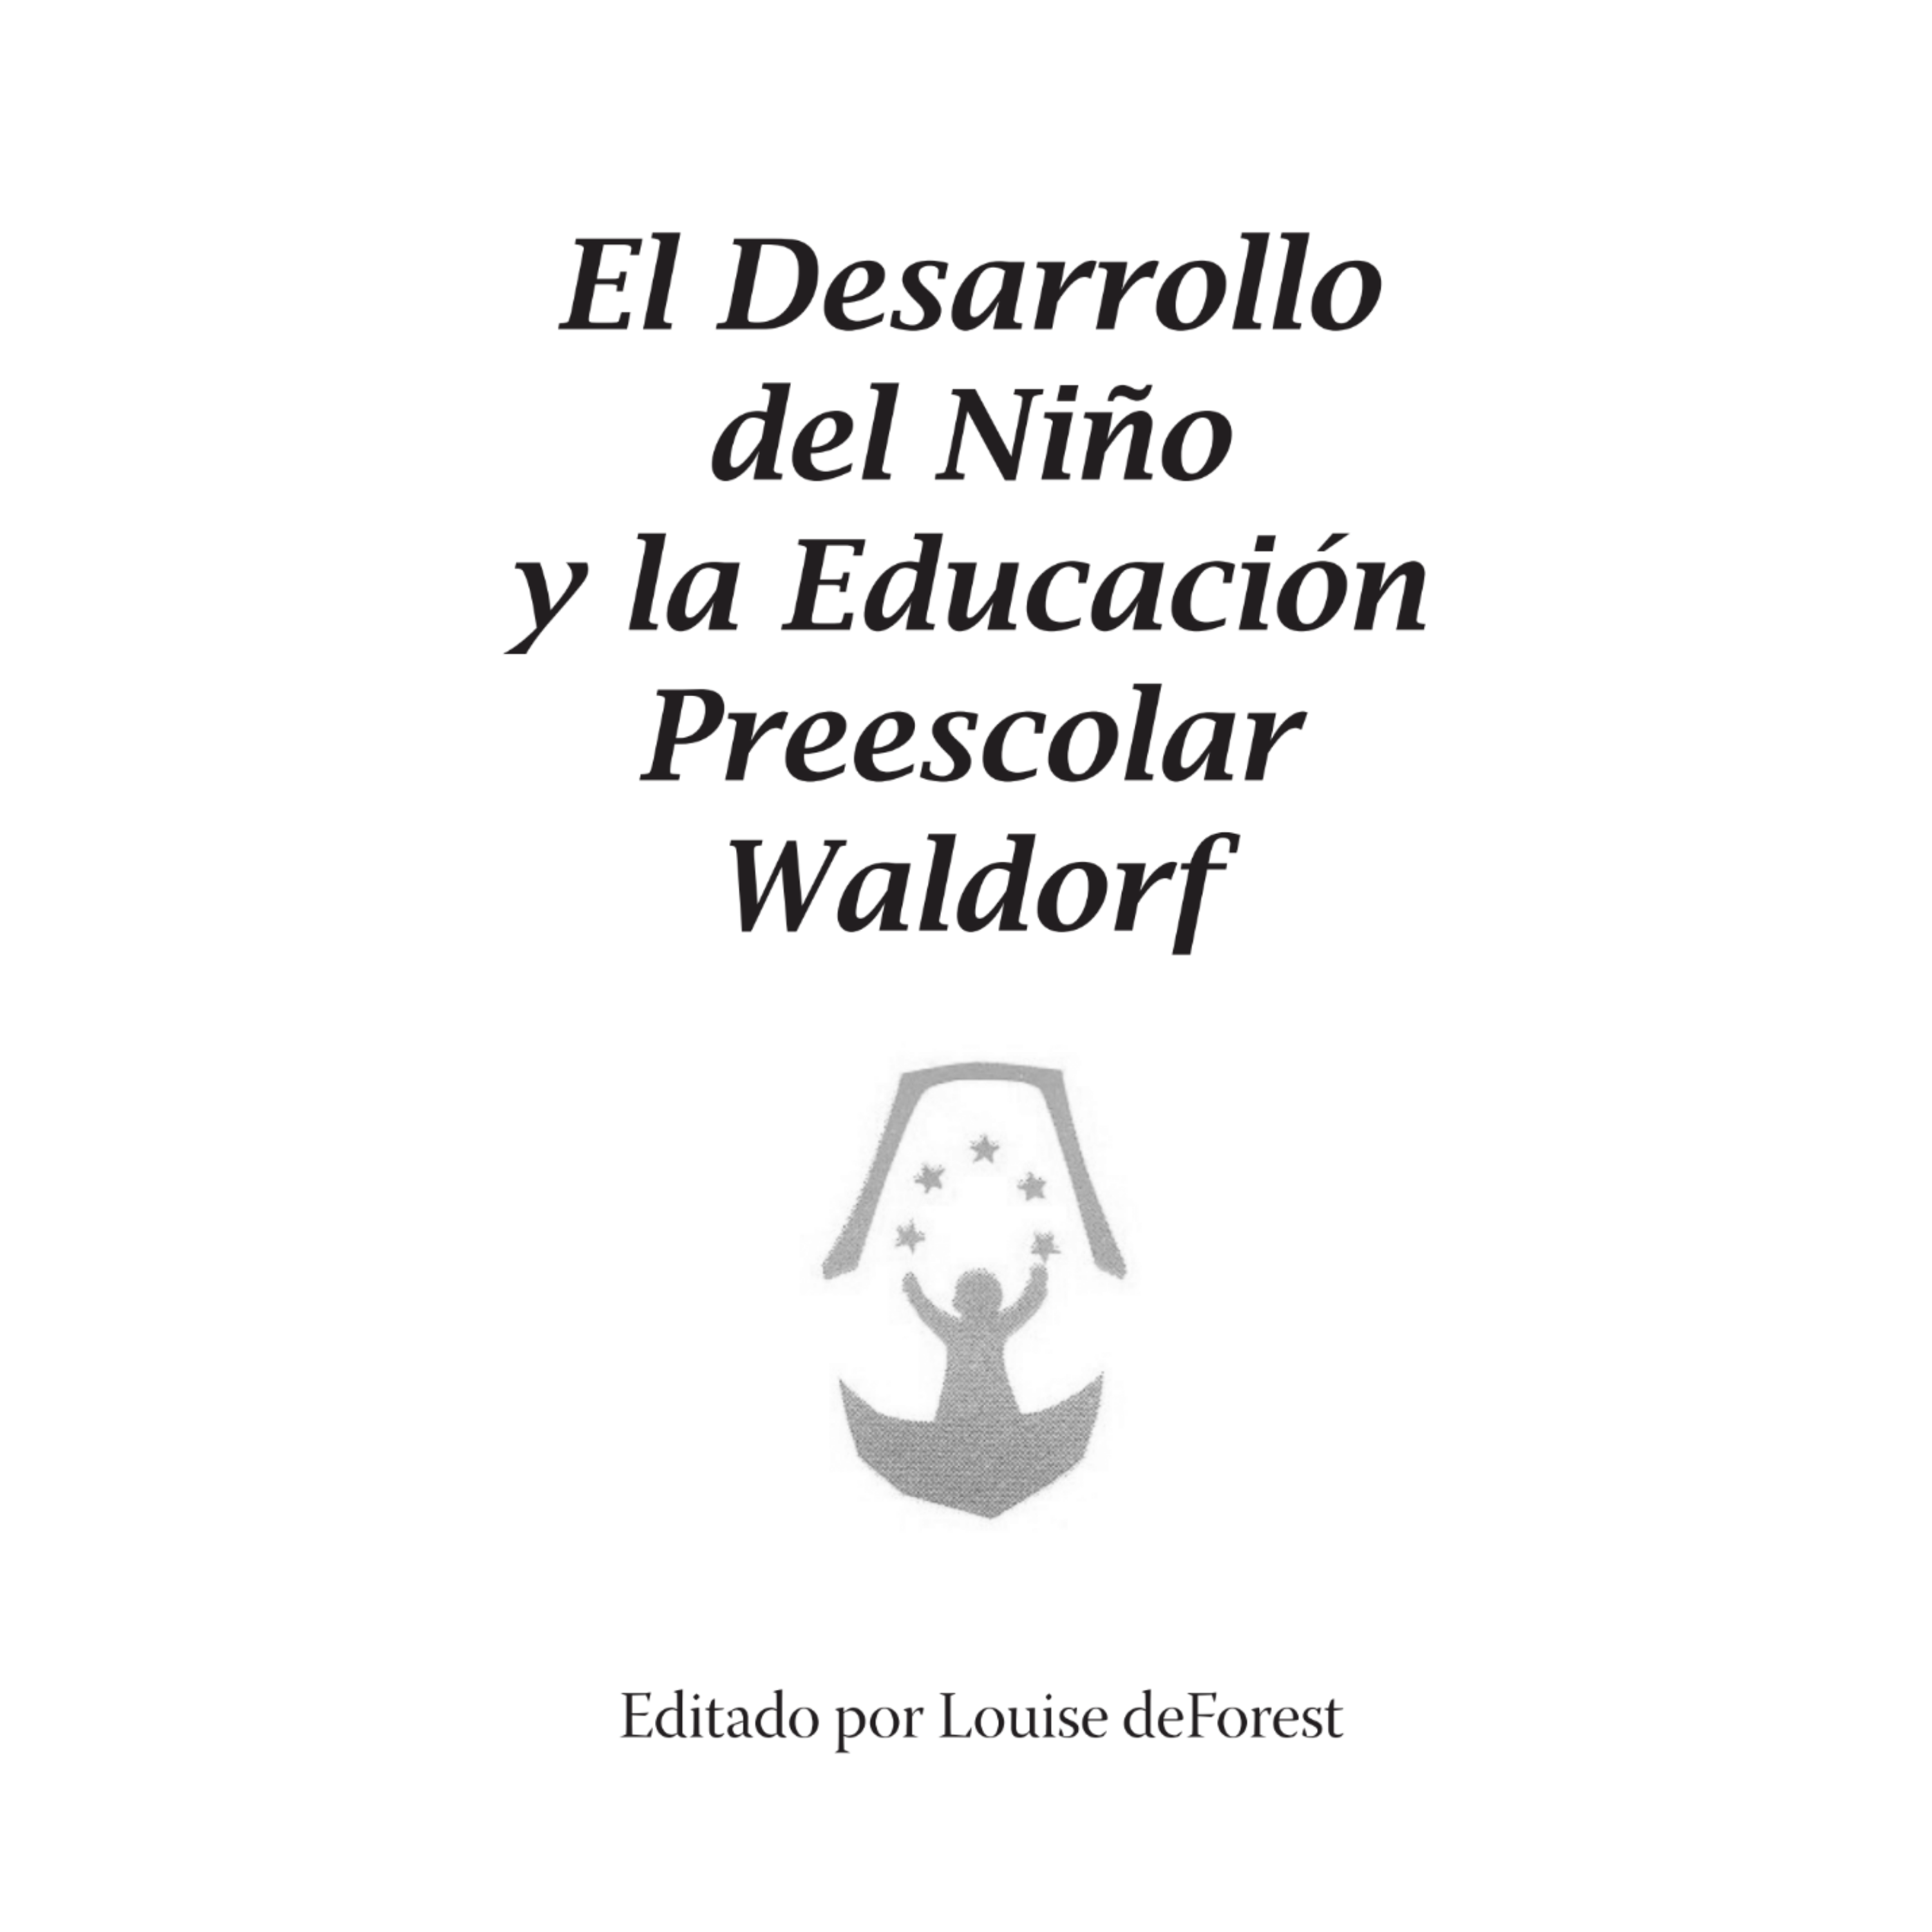 El Desarrollo del Niño y la Educación Preescolar Waldorf